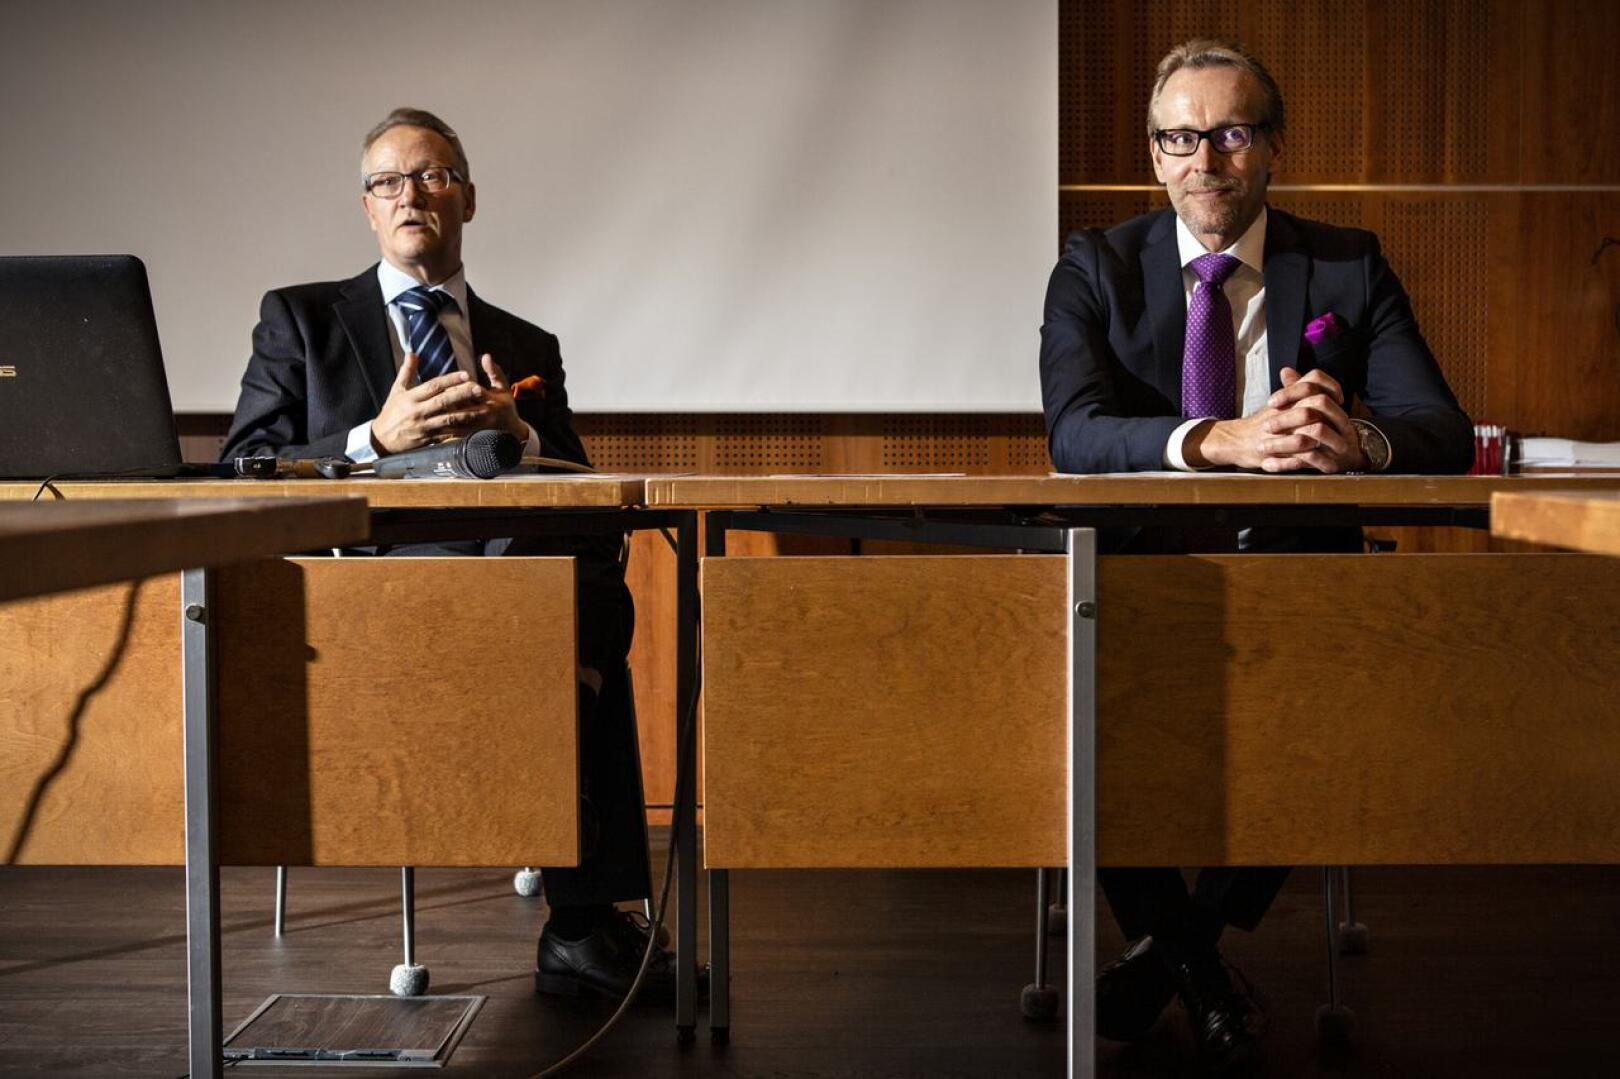 Pohjanmaan kauppakamari hakee uutta toimitusjohtajaa. Kuvassa nykyinen toimitusjohtaja Juha Häkkinen (vas.) ja kauppakamarin hallituksen puheenjohtaja Ulf Nylund.